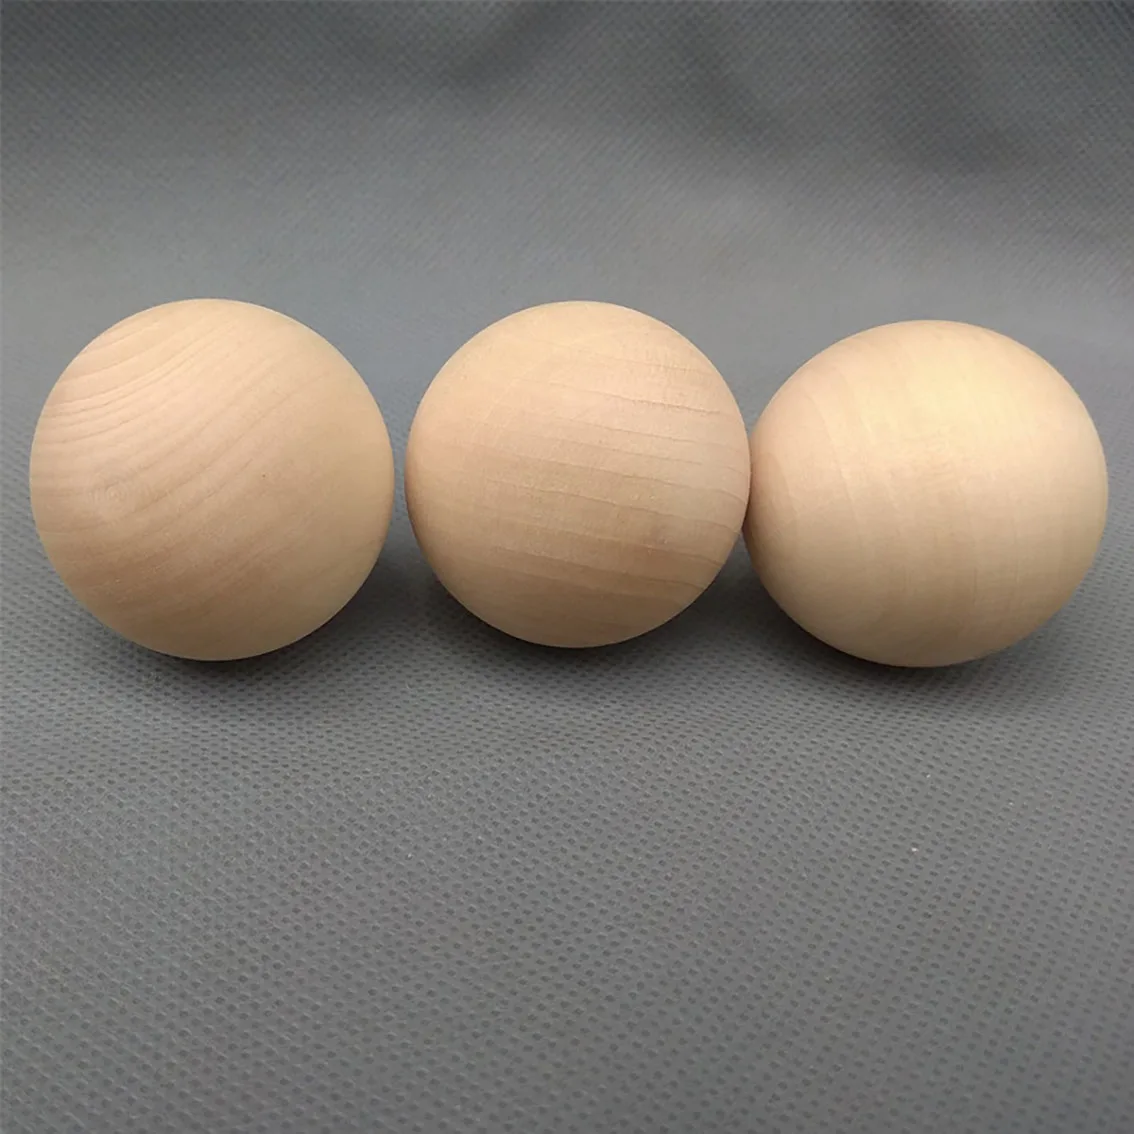 Bóng gỗ, banh gỗ không màu 3 cm, 4 cm, 5 cm, đồ chơi cho bé hoặc vật liệu DIY, khối tròn trang trí